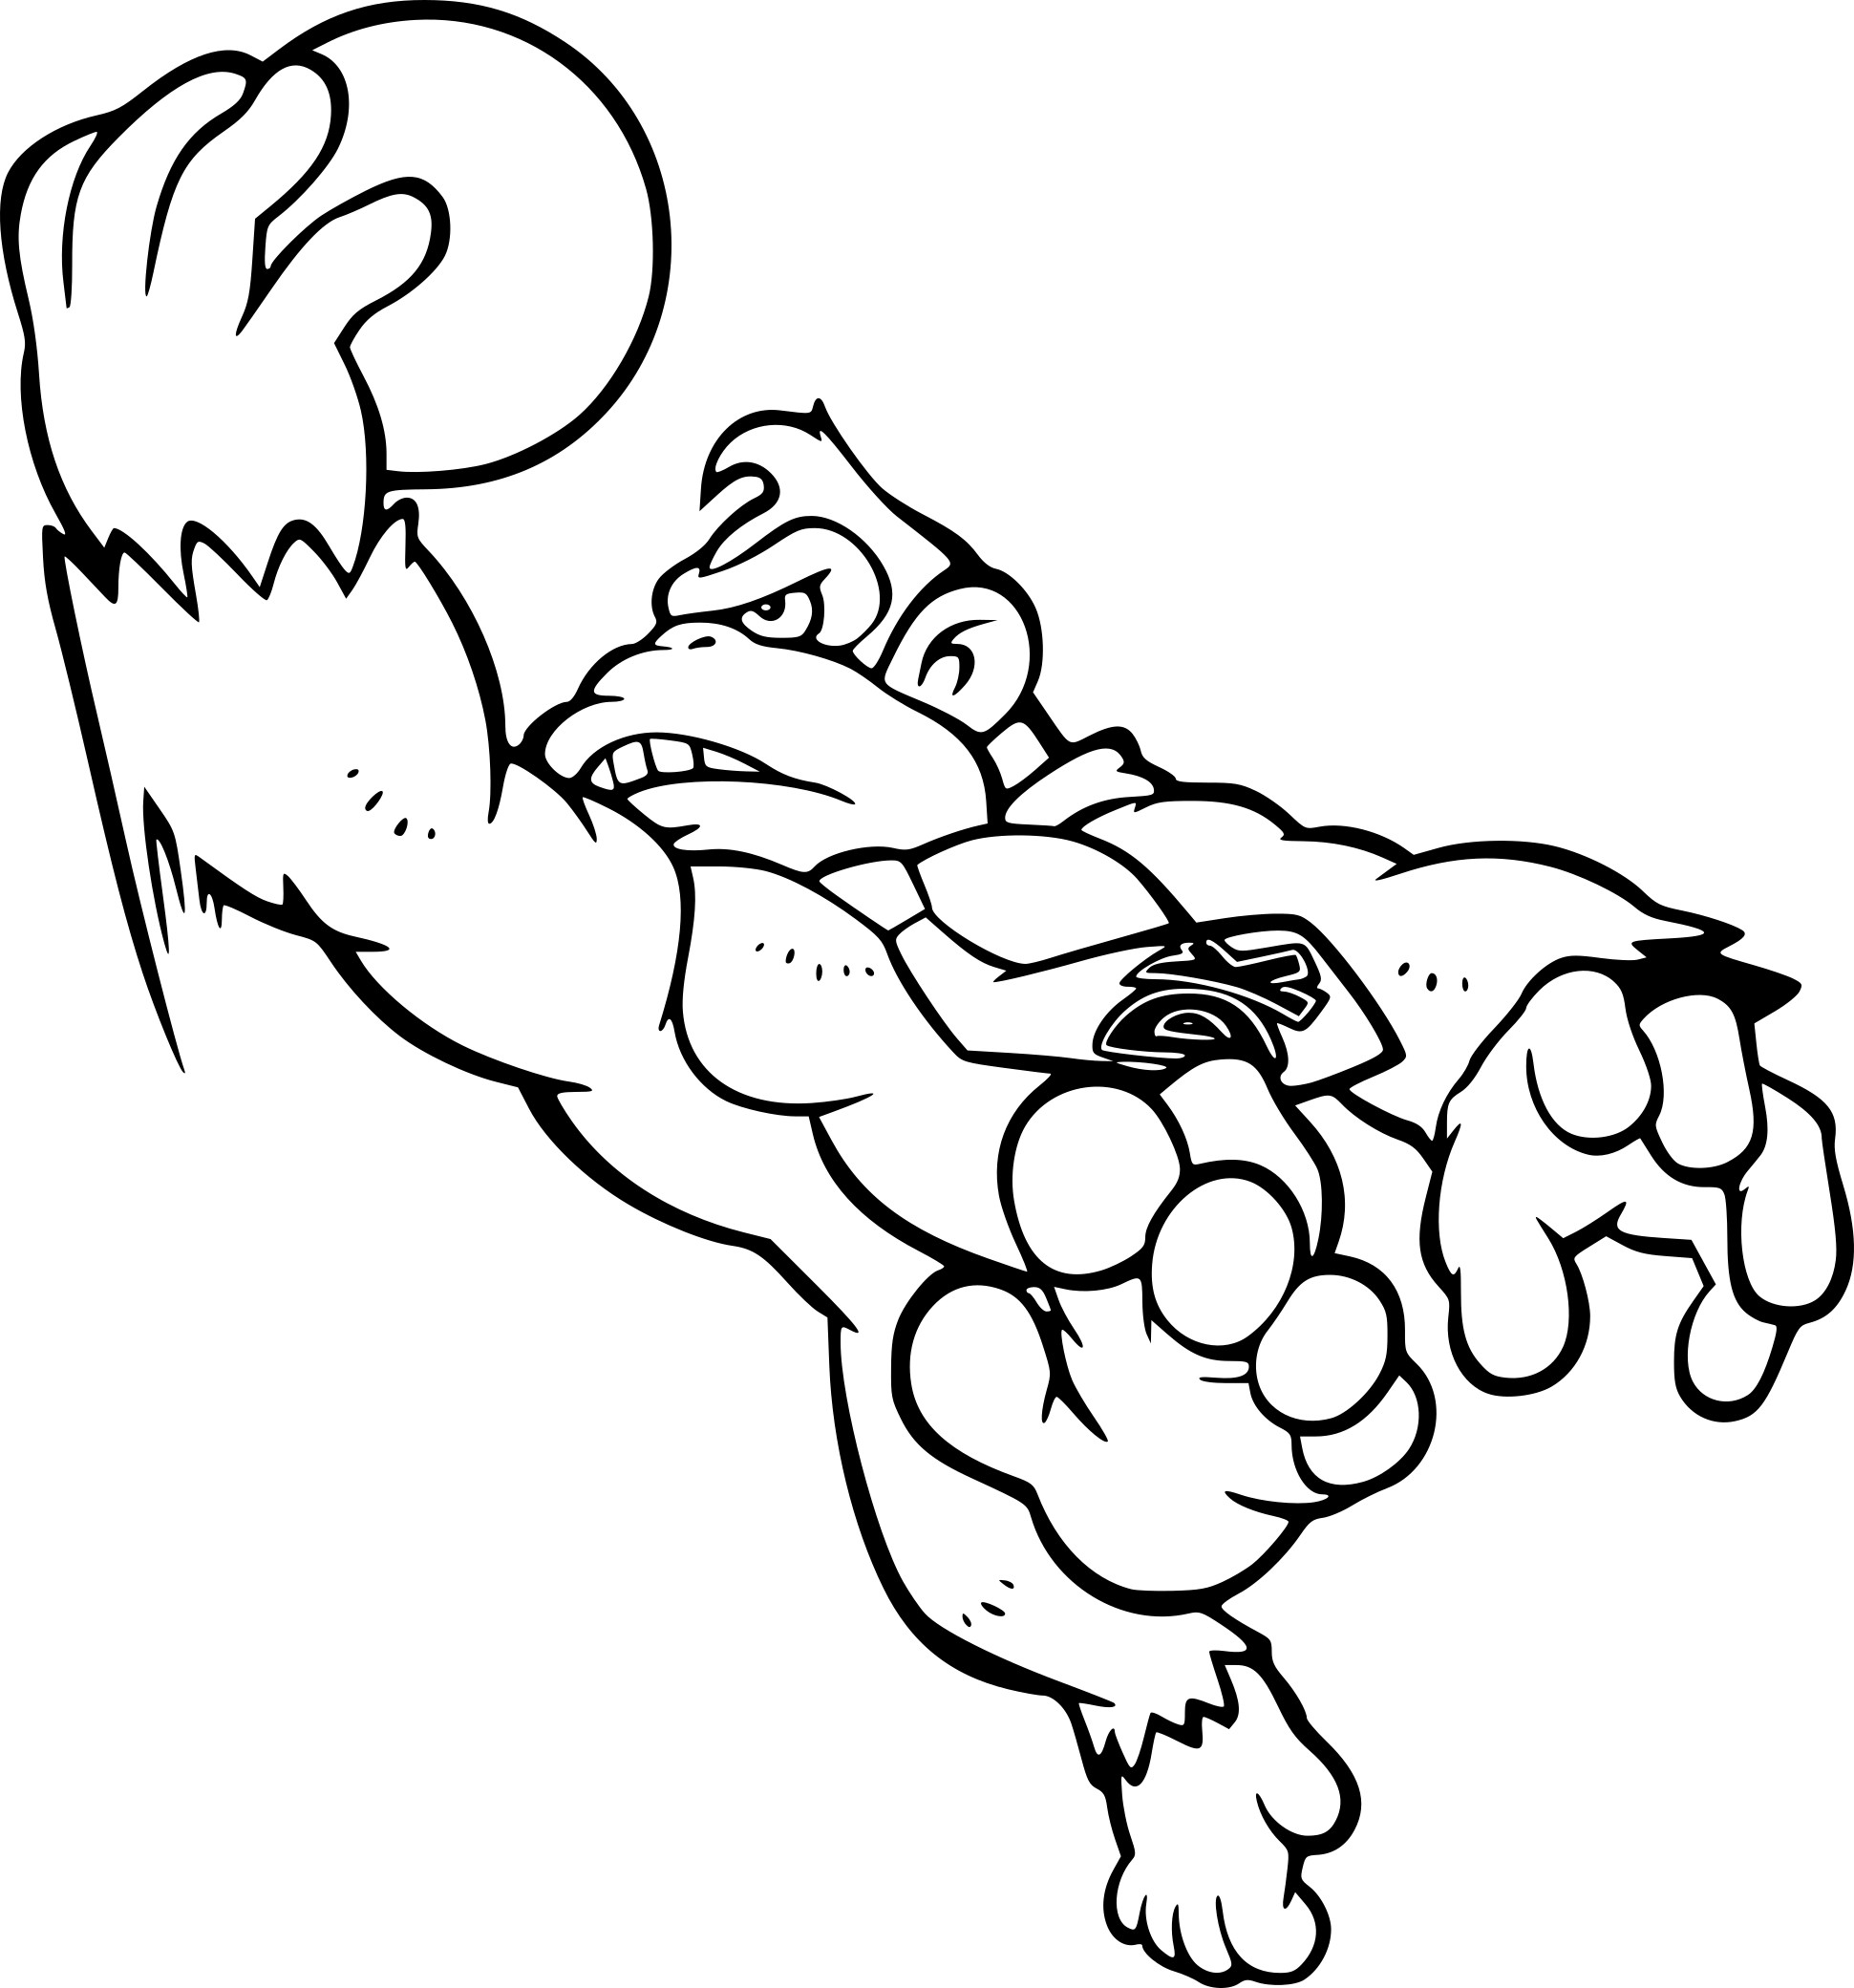 Donkey Kong coloring page